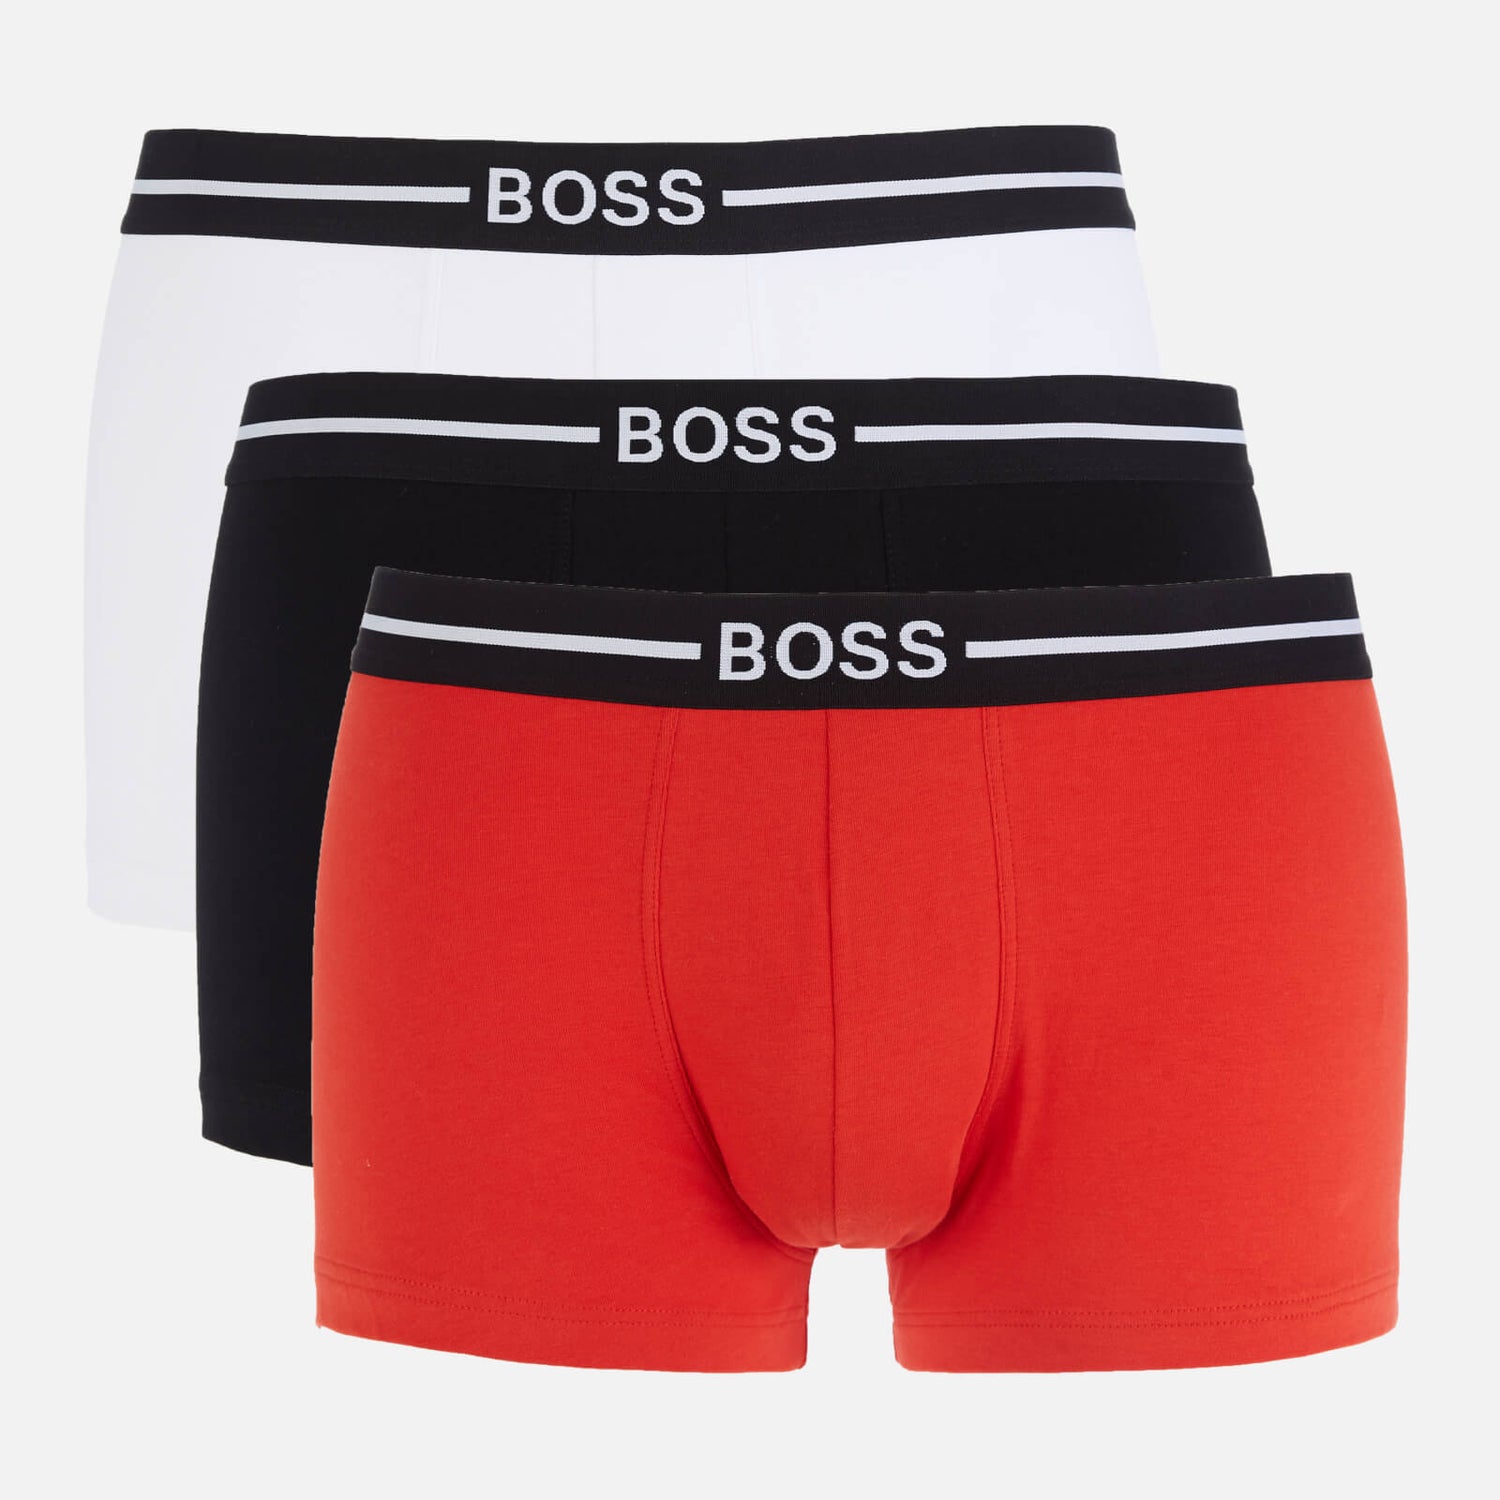 BOSS Bodywear Men's 3 Pack Organic Cotton Trunks - Black/Red/White